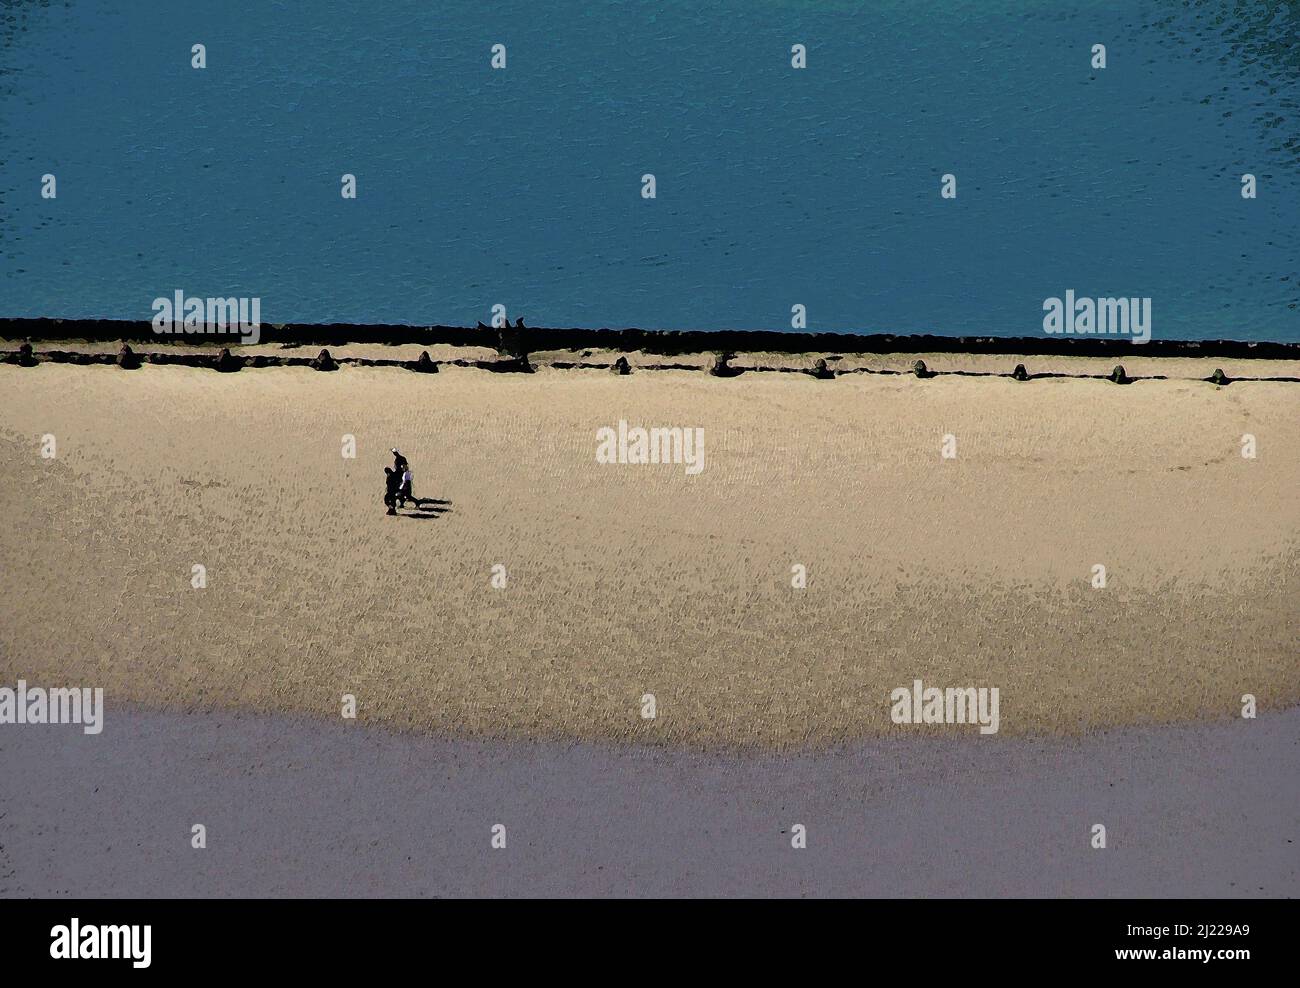 Digitale Multimedia-Kunstwerke Illustration einer Familie, die am Strand entlang geht Bild inspiriert von der North Shore, Llandudno, Nordwales, Hauptstrand Stockfoto